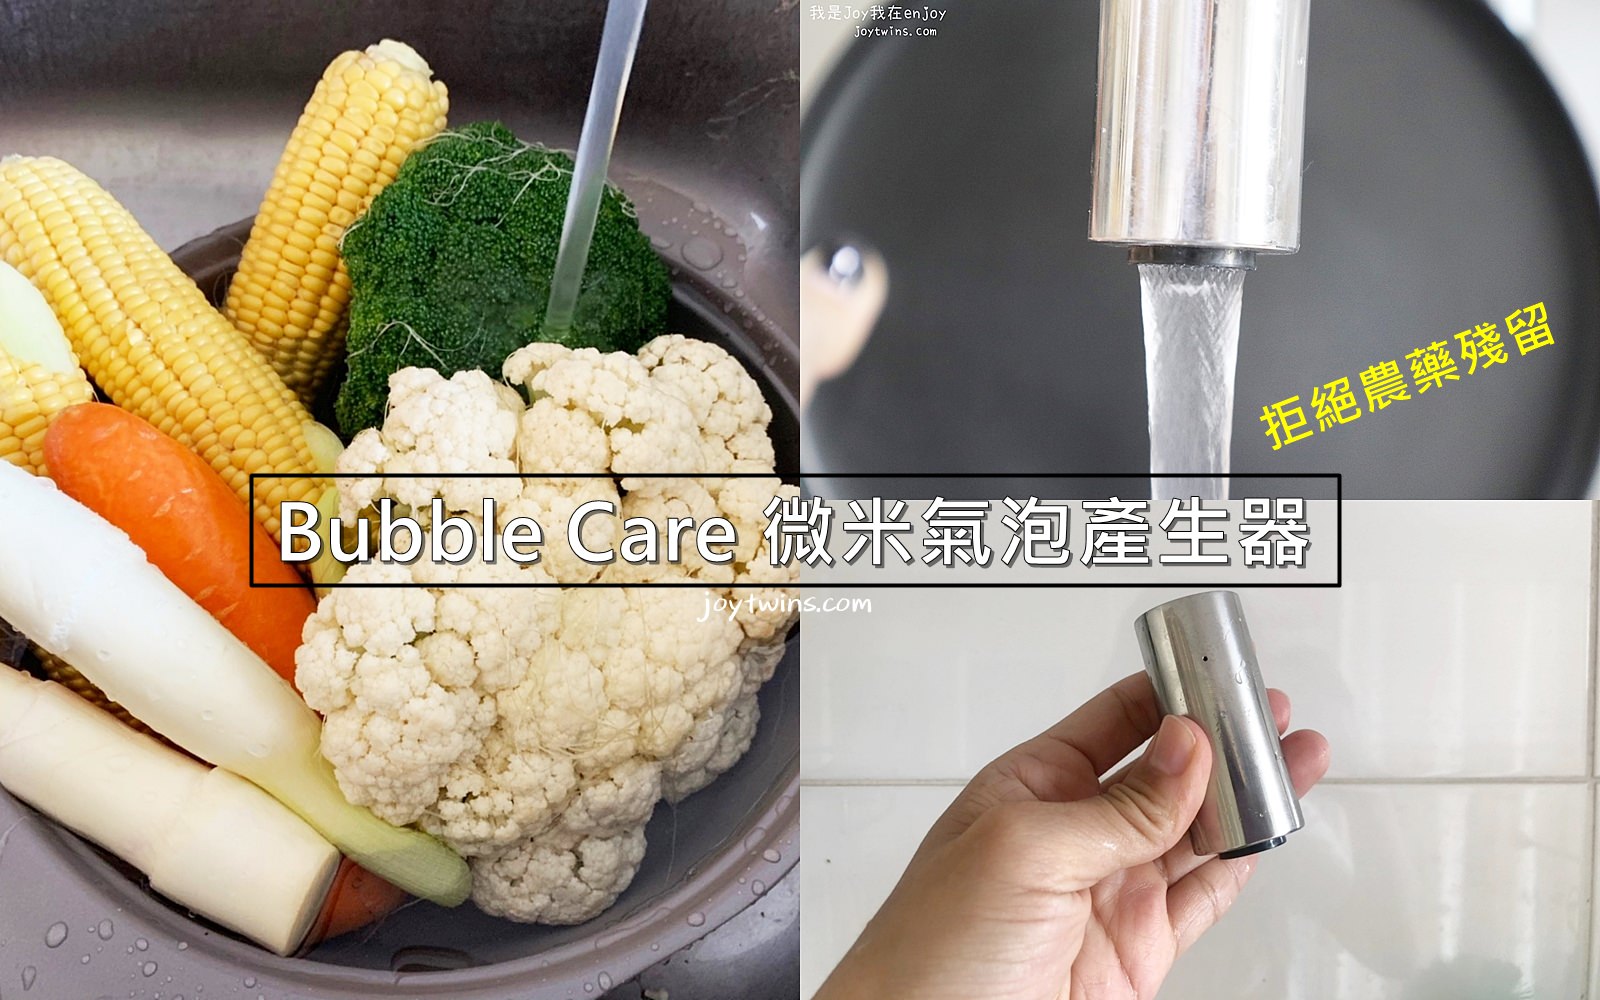 【團購】Bubble Care 微米氣泡產生器 讓媽咪不再煩惱農藥殘留的隱憂!